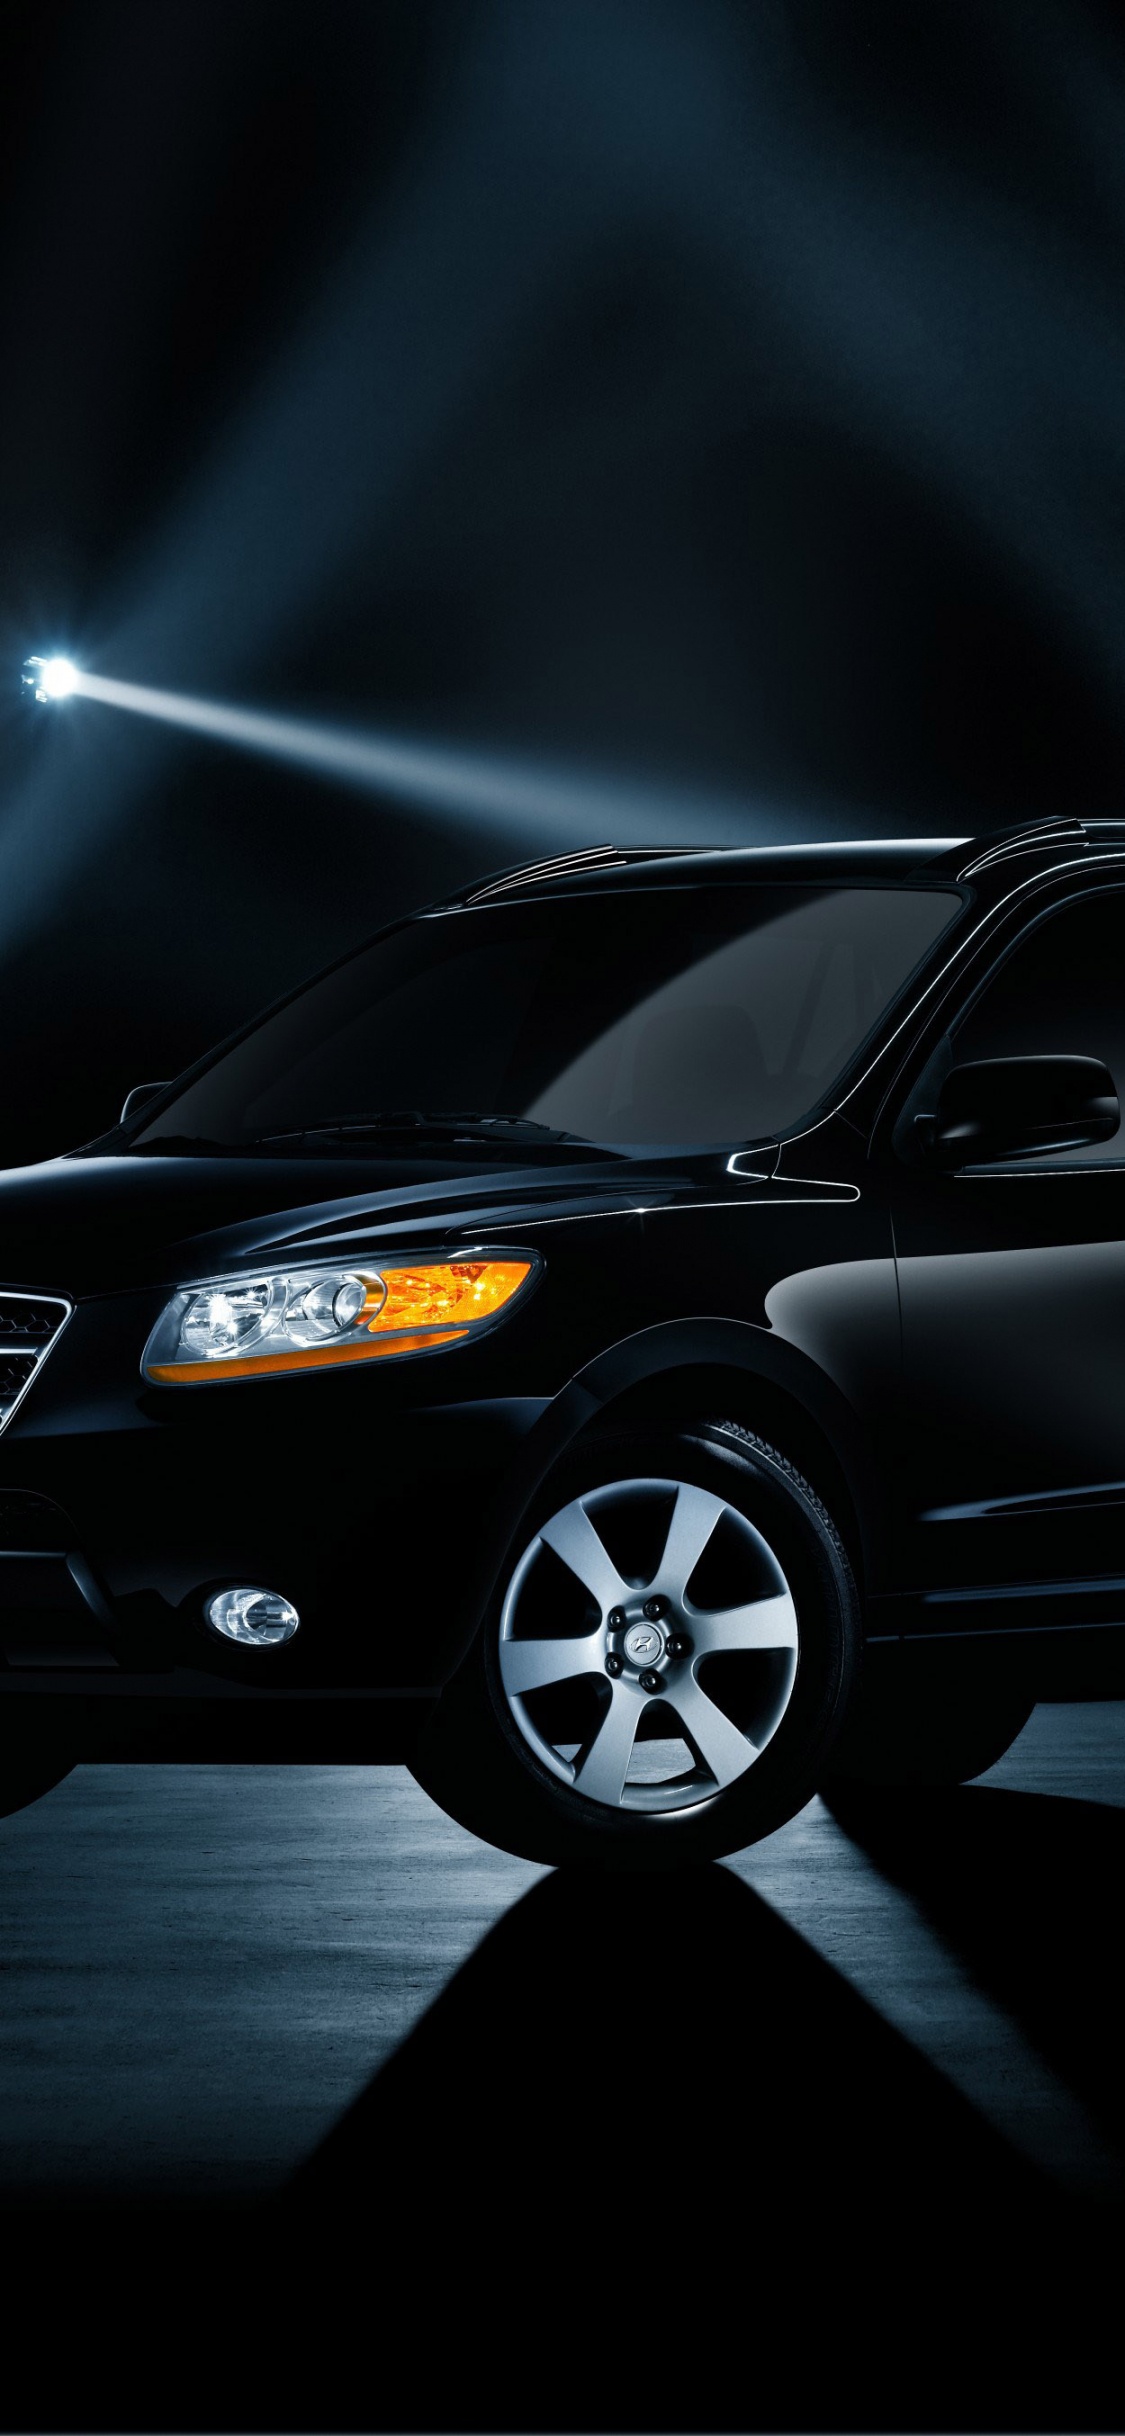 Black Honda Sedan in a Dark Room. Wallpaper in 1125x2436 Resolution